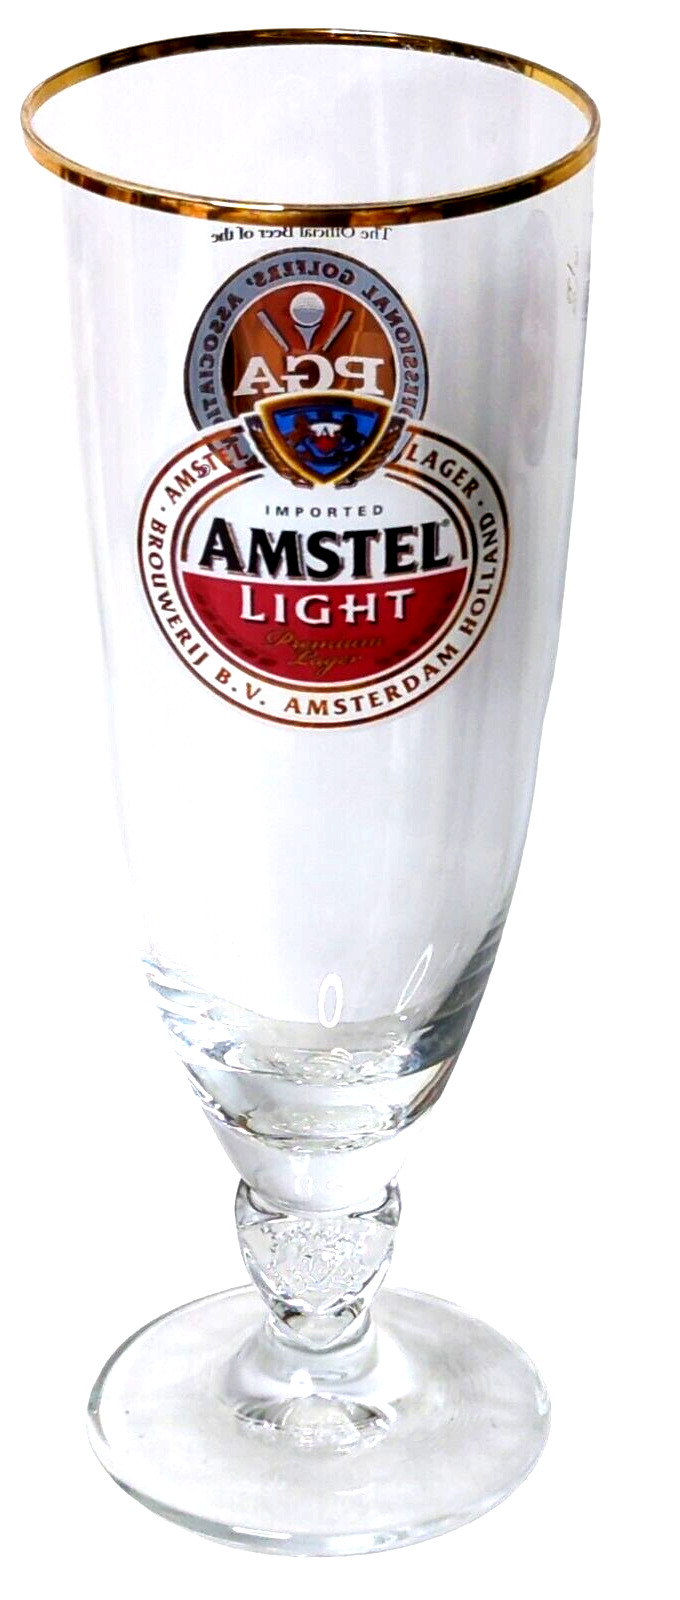  Amstel Light PGA 1916 Limited Edition Pilsner Beer Glass 12 FL OZ